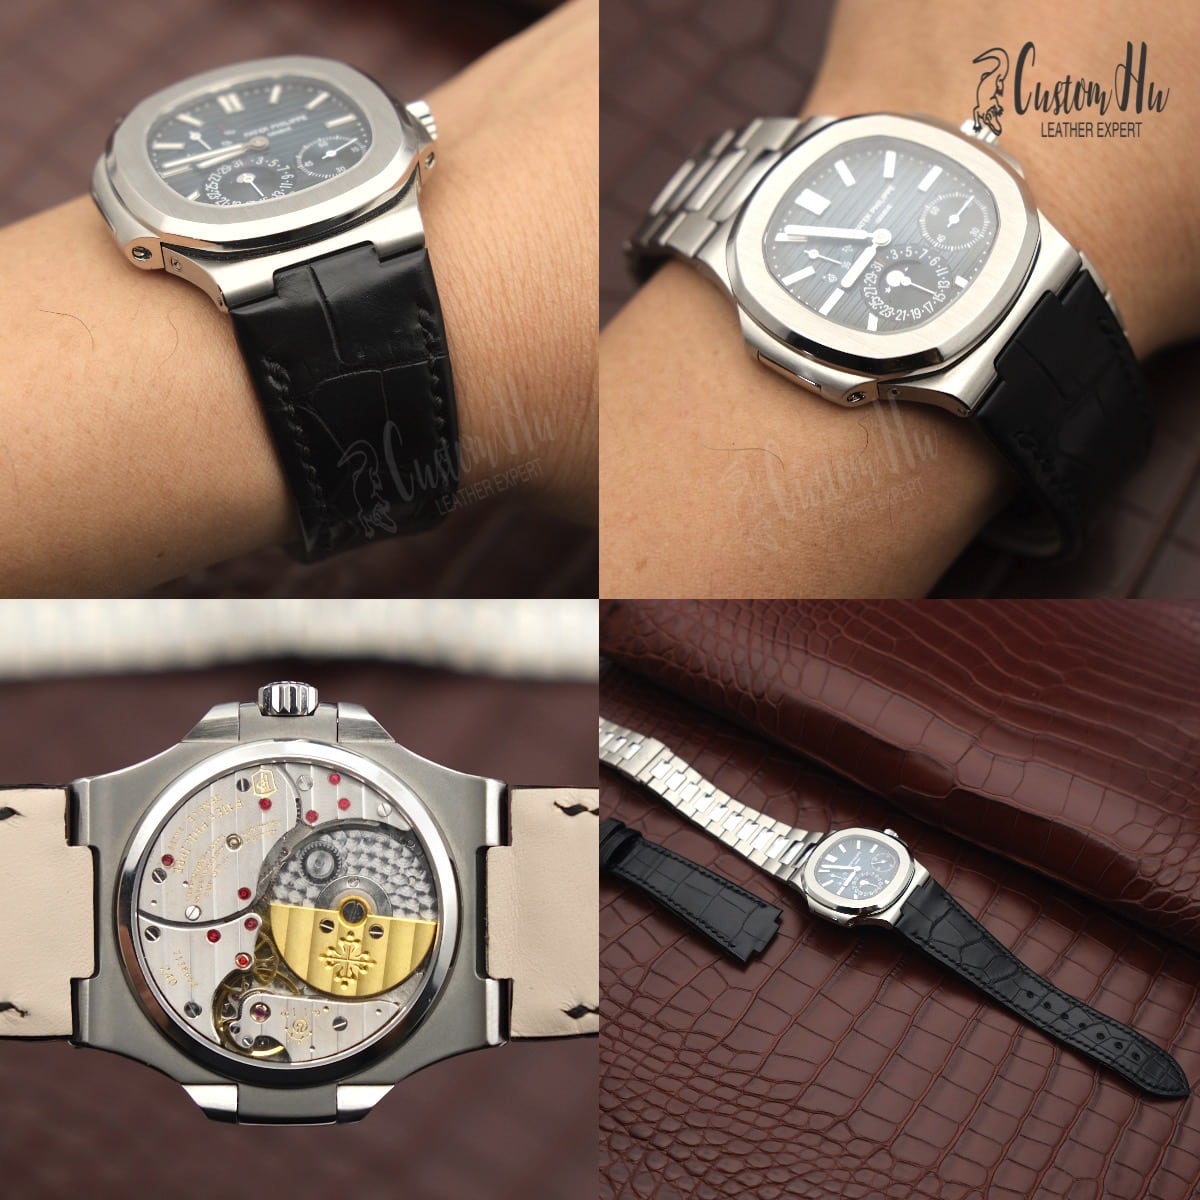 Pulseira de luxo personalizada para seus relógios Pulseira de relógio personalizada Suporta qualquer estilo e cor customhu